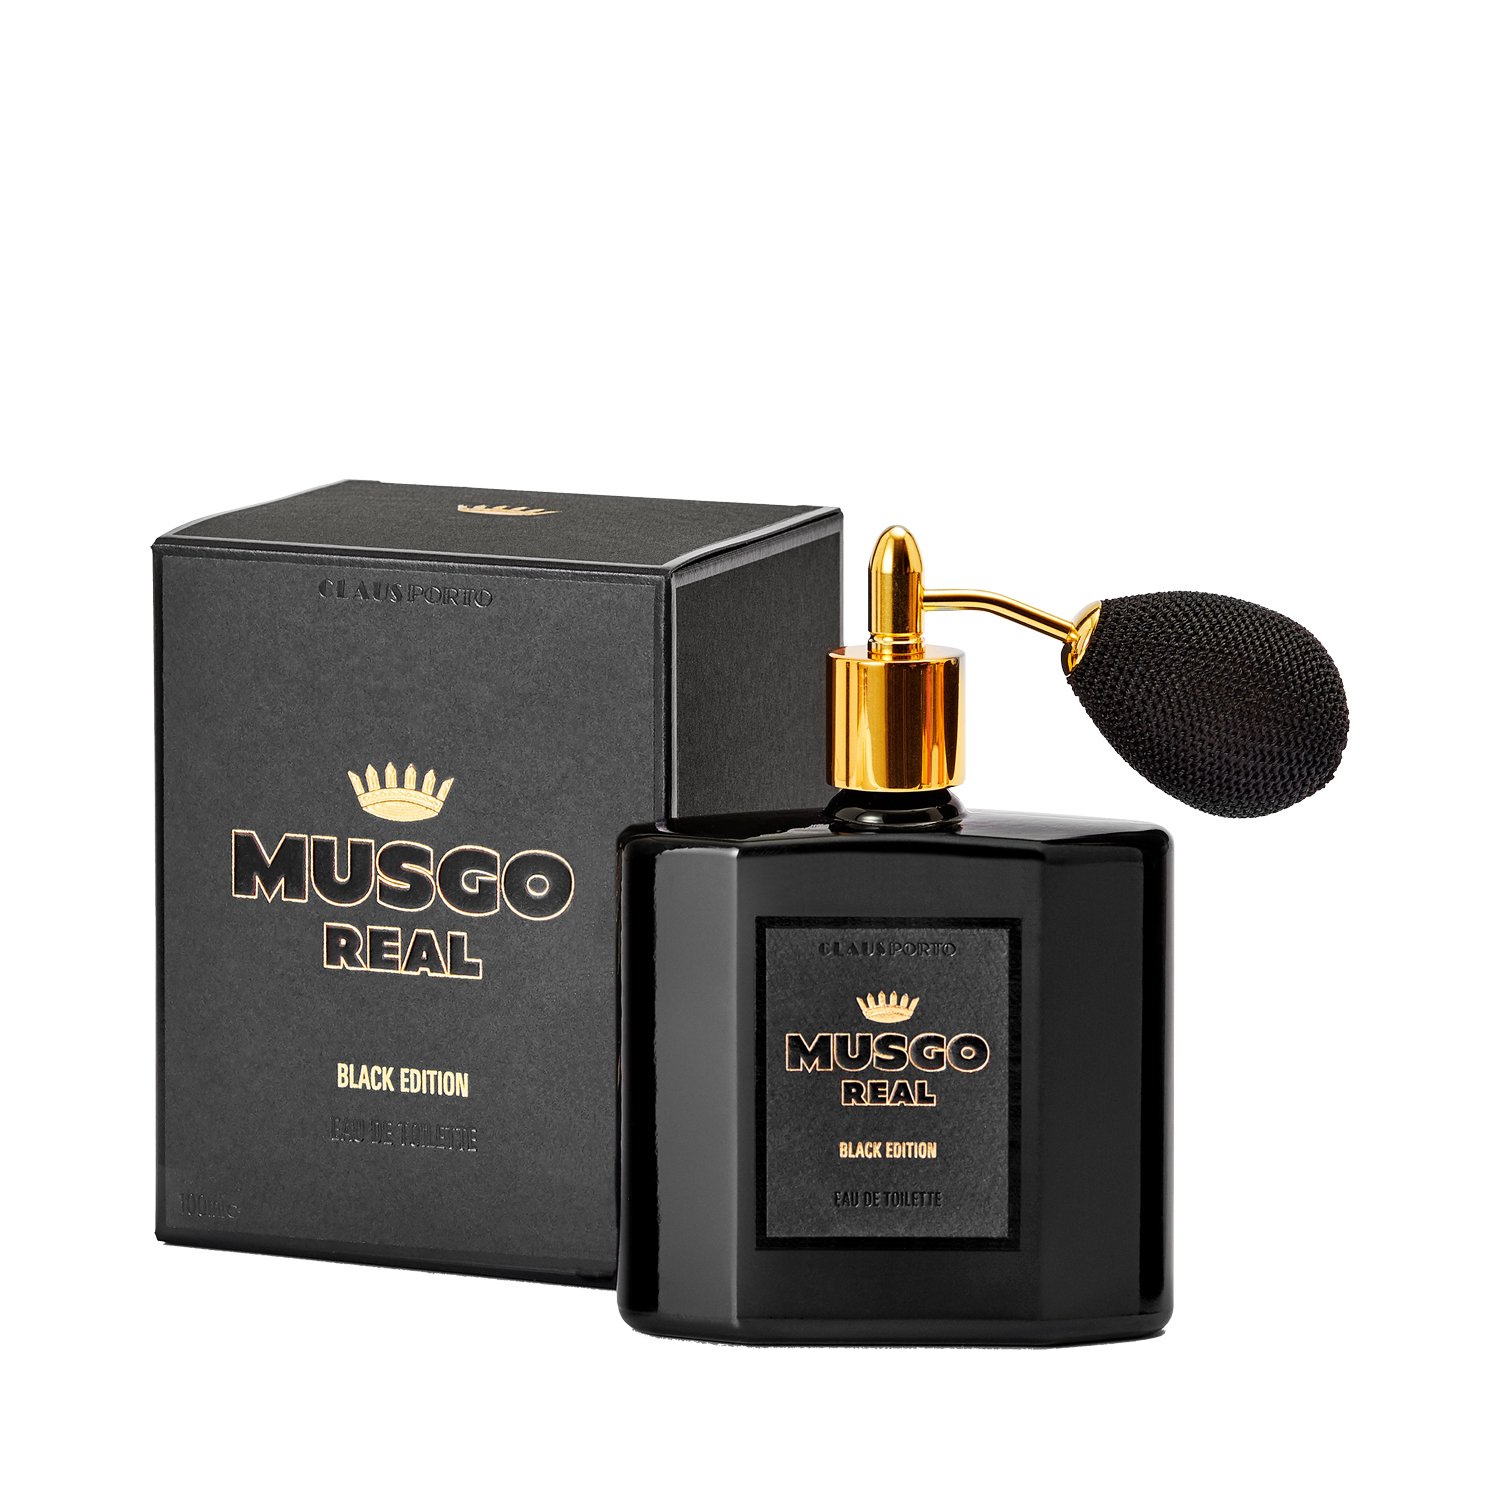 Musgo Real - Eau de Toilette - Black Edition